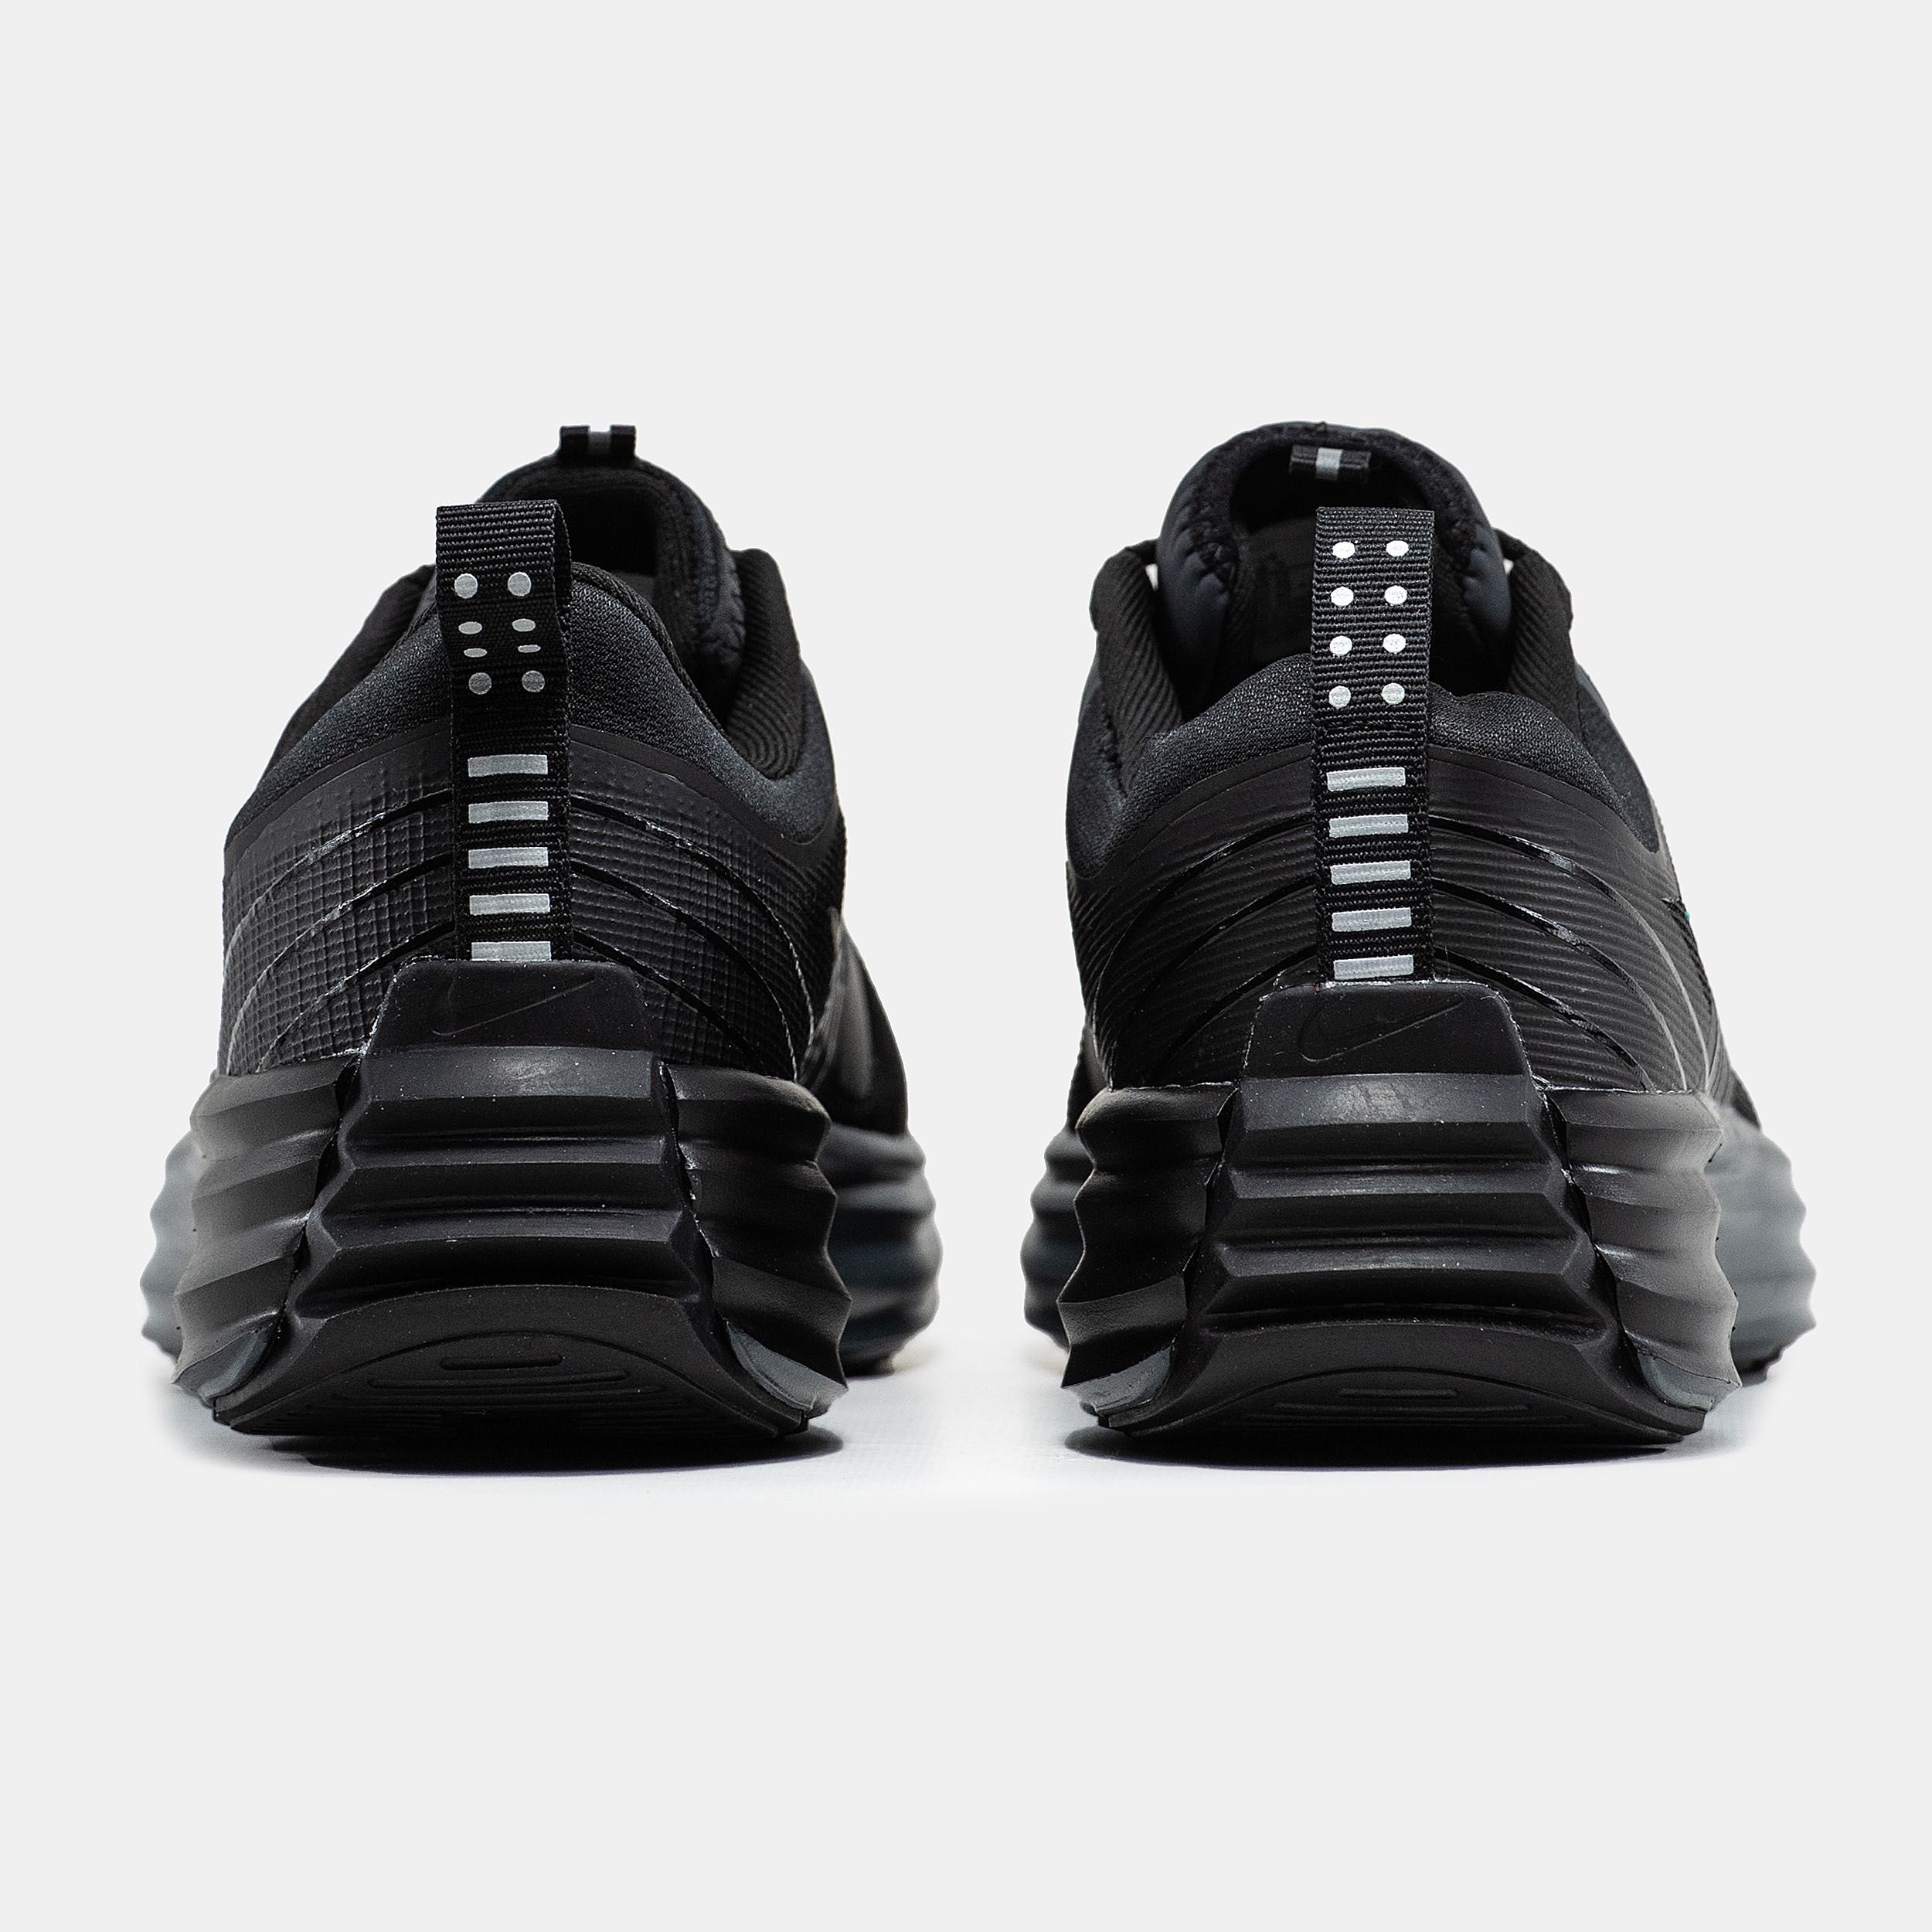 Мужские кроссовки Nike Lunar Roam black. Размеры 40-45